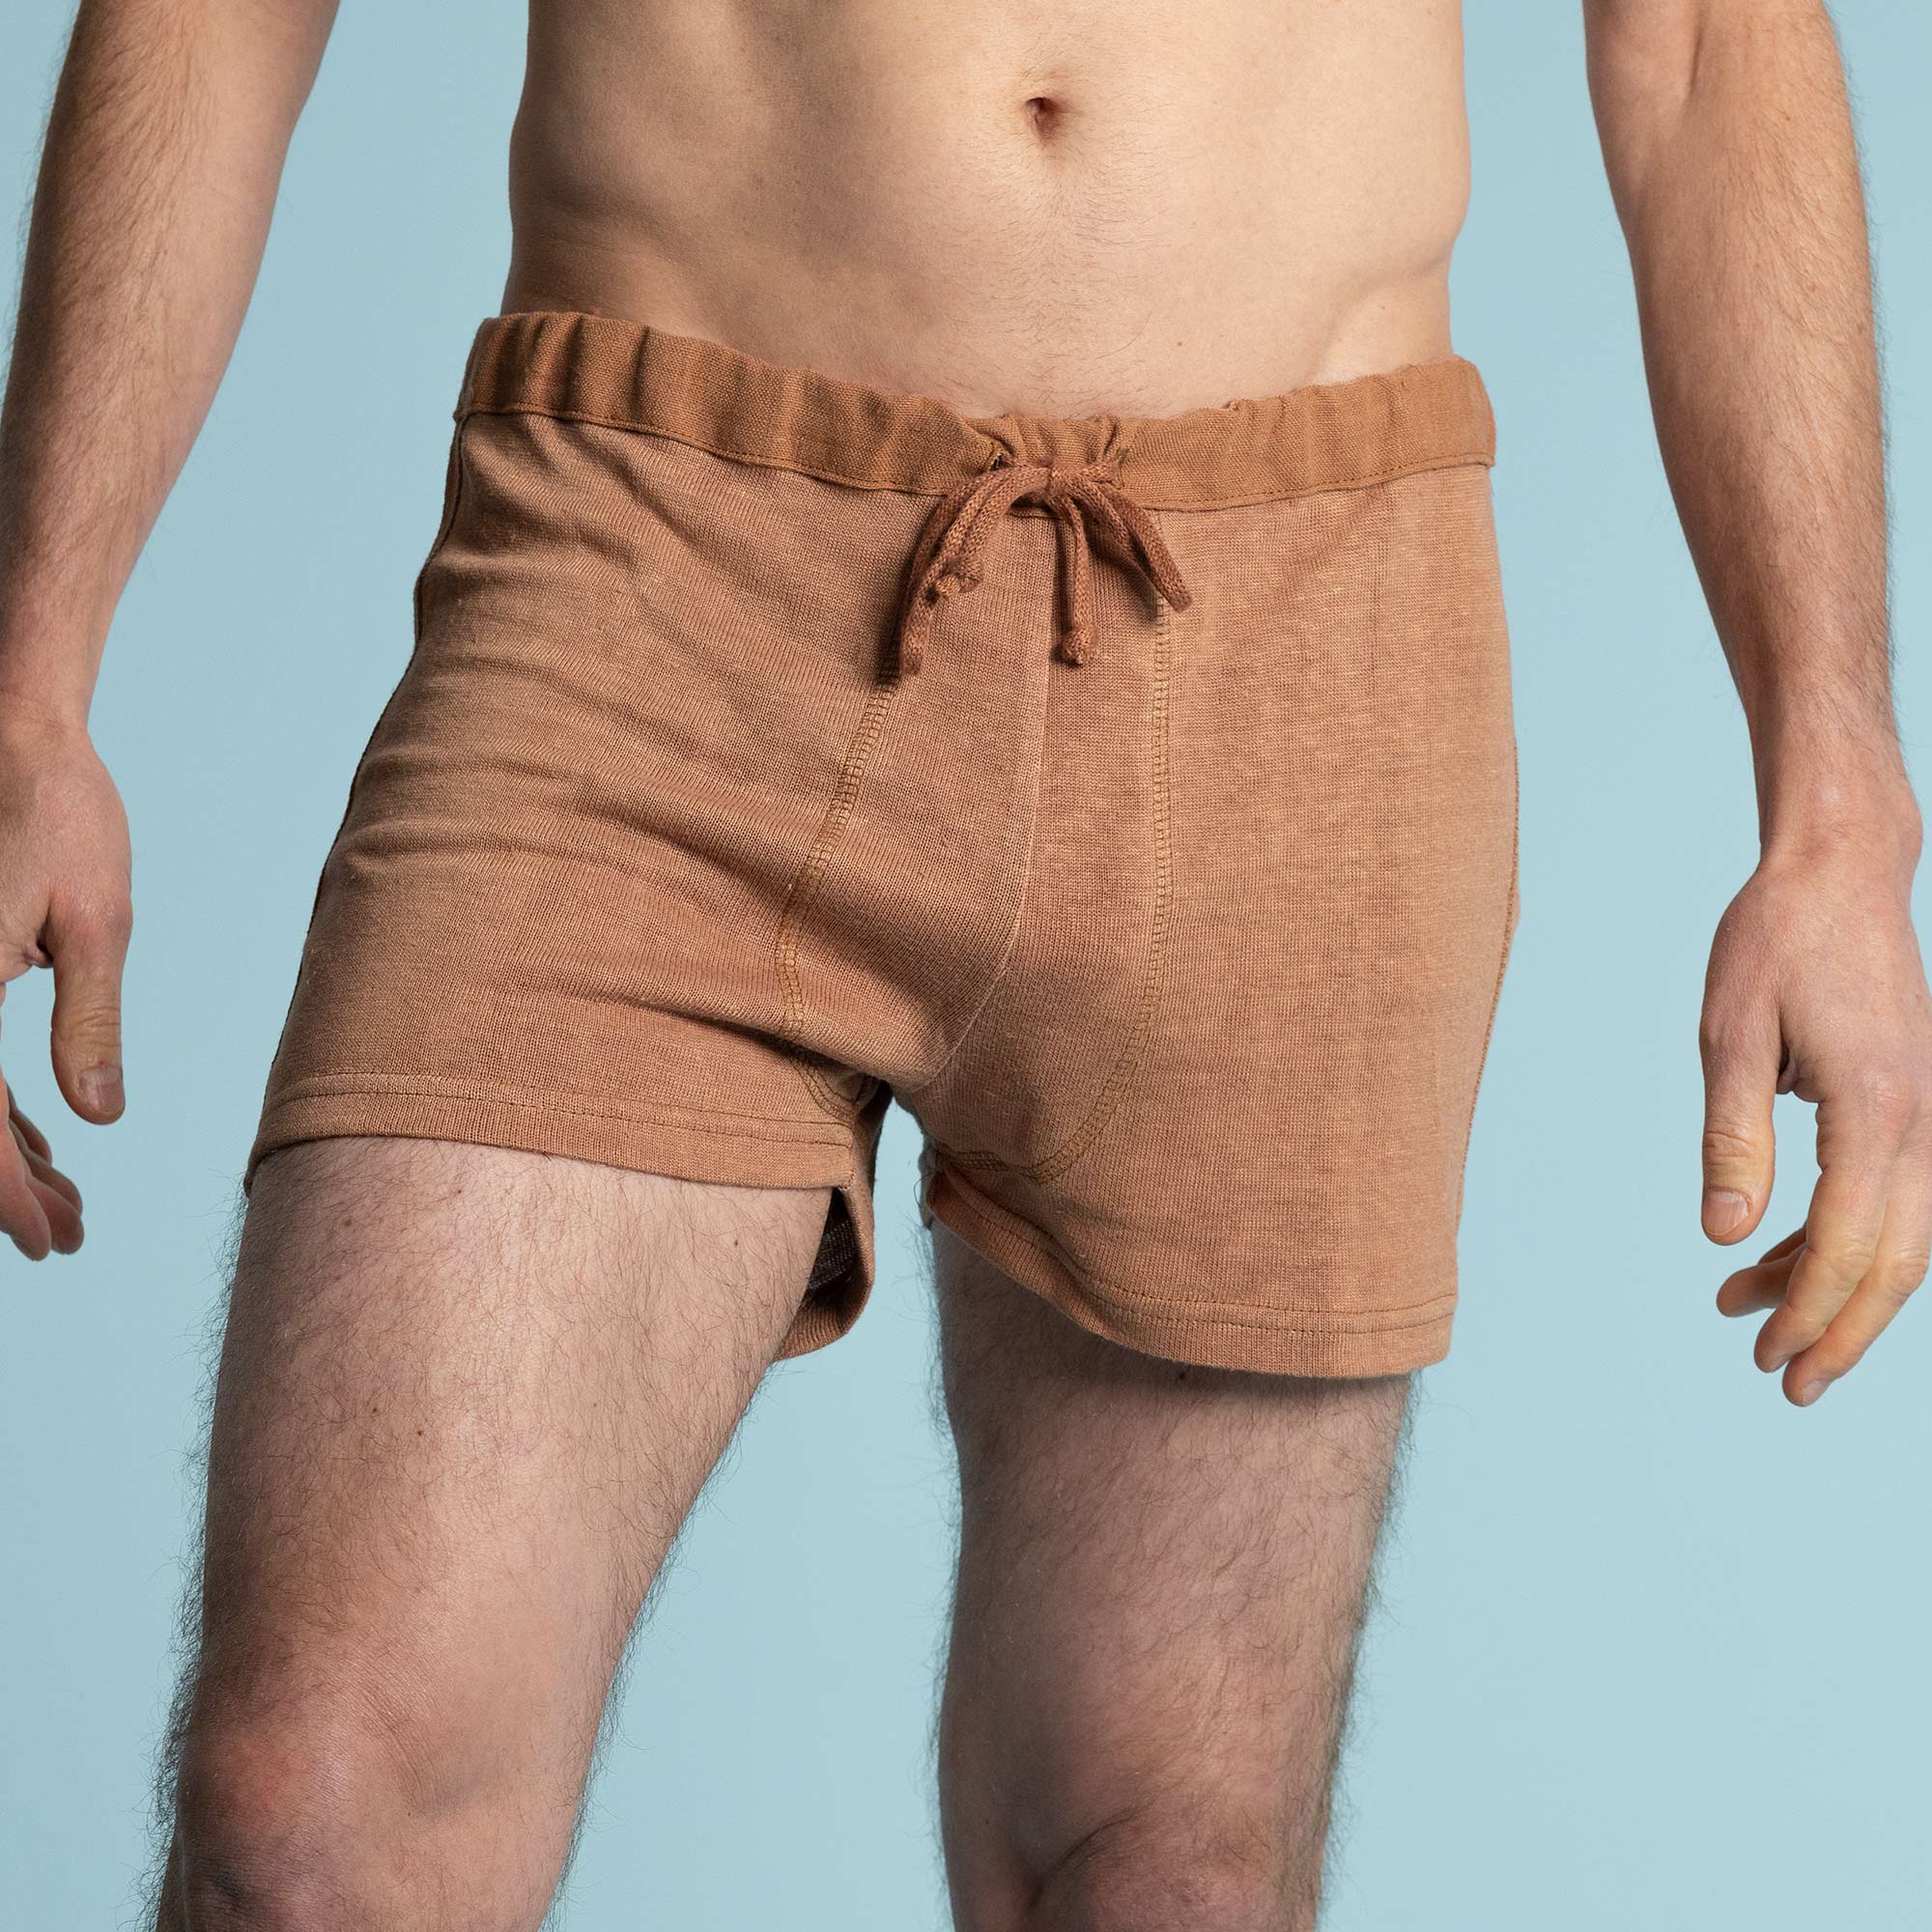 Heavy Duty Knit Underwear - Boxer Brief